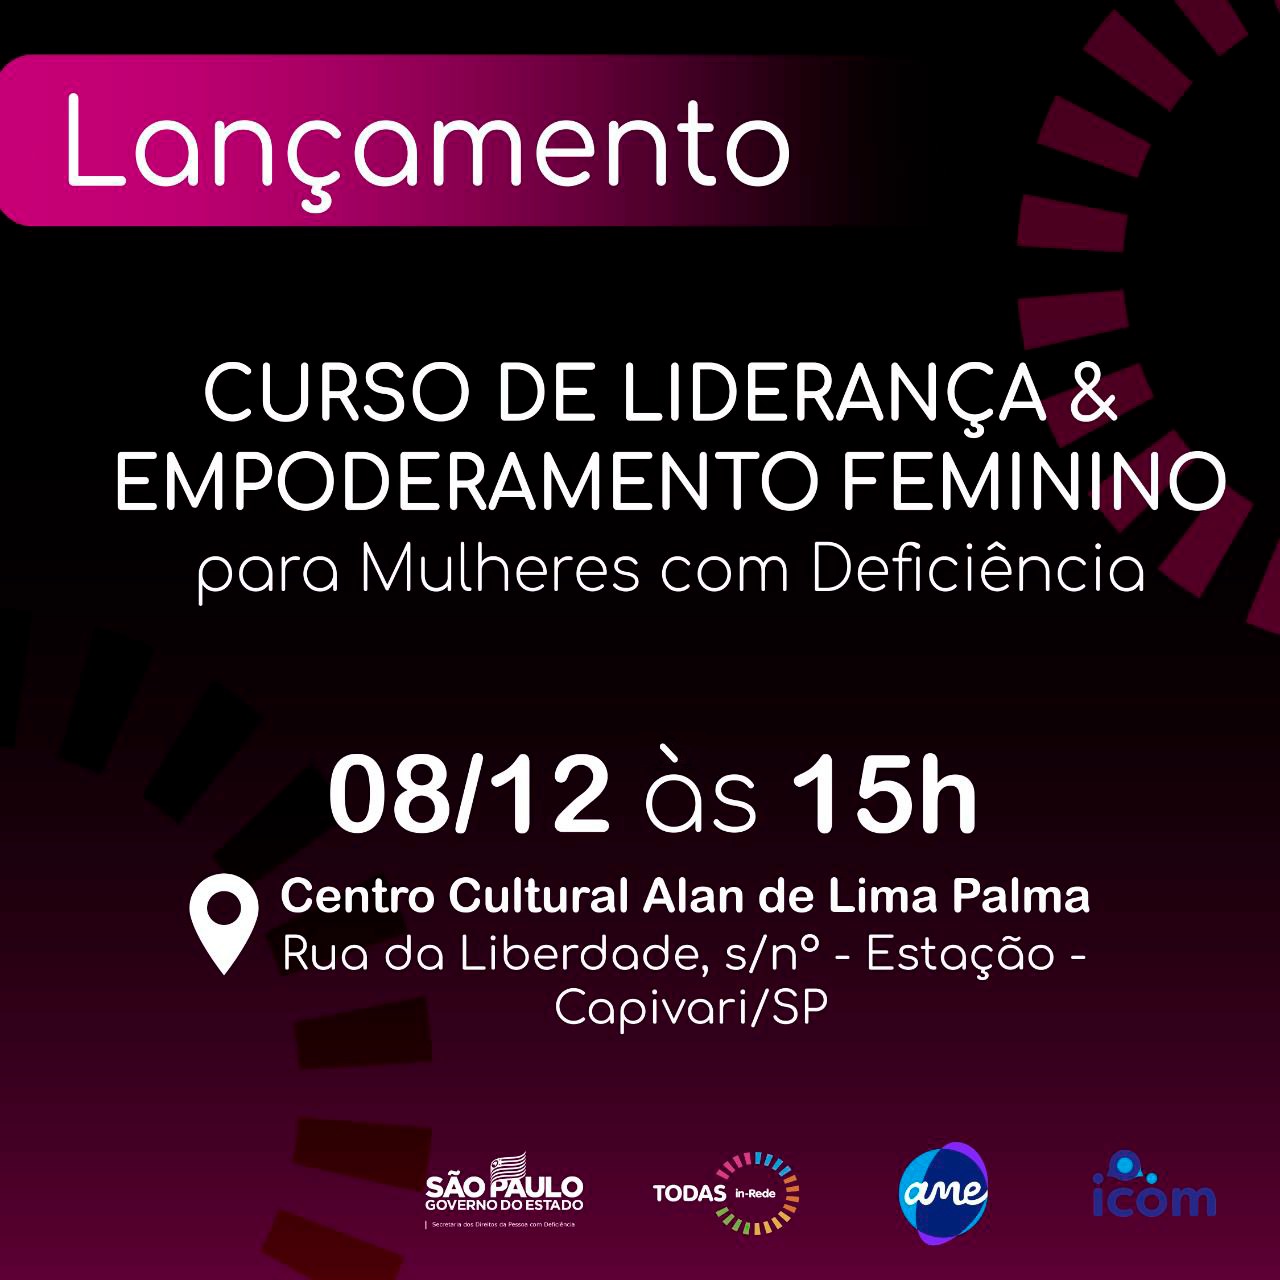 Curso de Liderança e Empoderamento Feminino para mulheres com deficiência será lançado no próximo dia 08 de dezembro